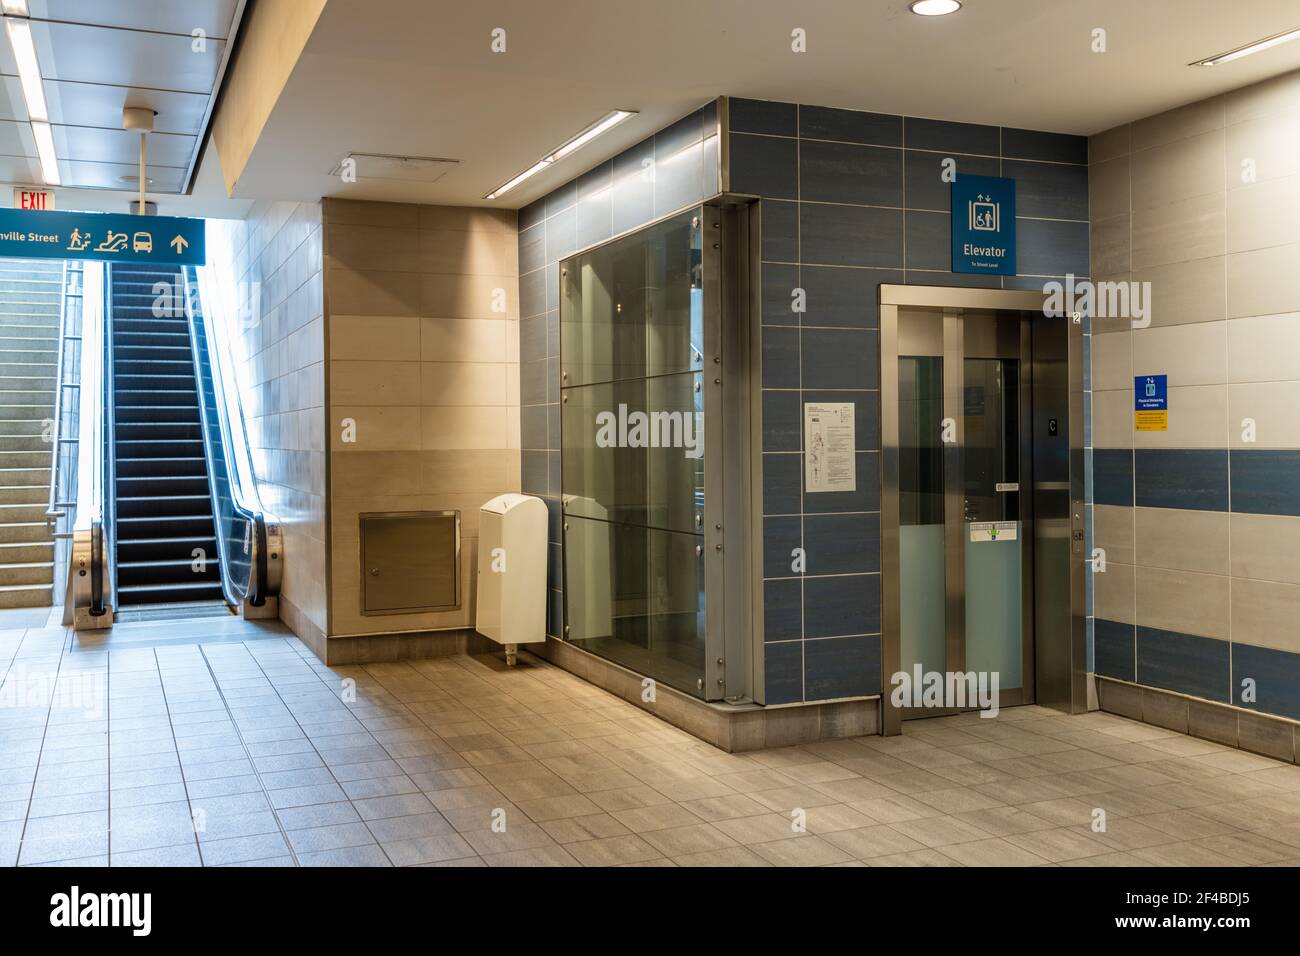 All'interno della scala mobile e dell'ascensore della stazione Waterfront. Metropolitana Skytrain Canada Line. Vancouver, Canada. Foto Stock